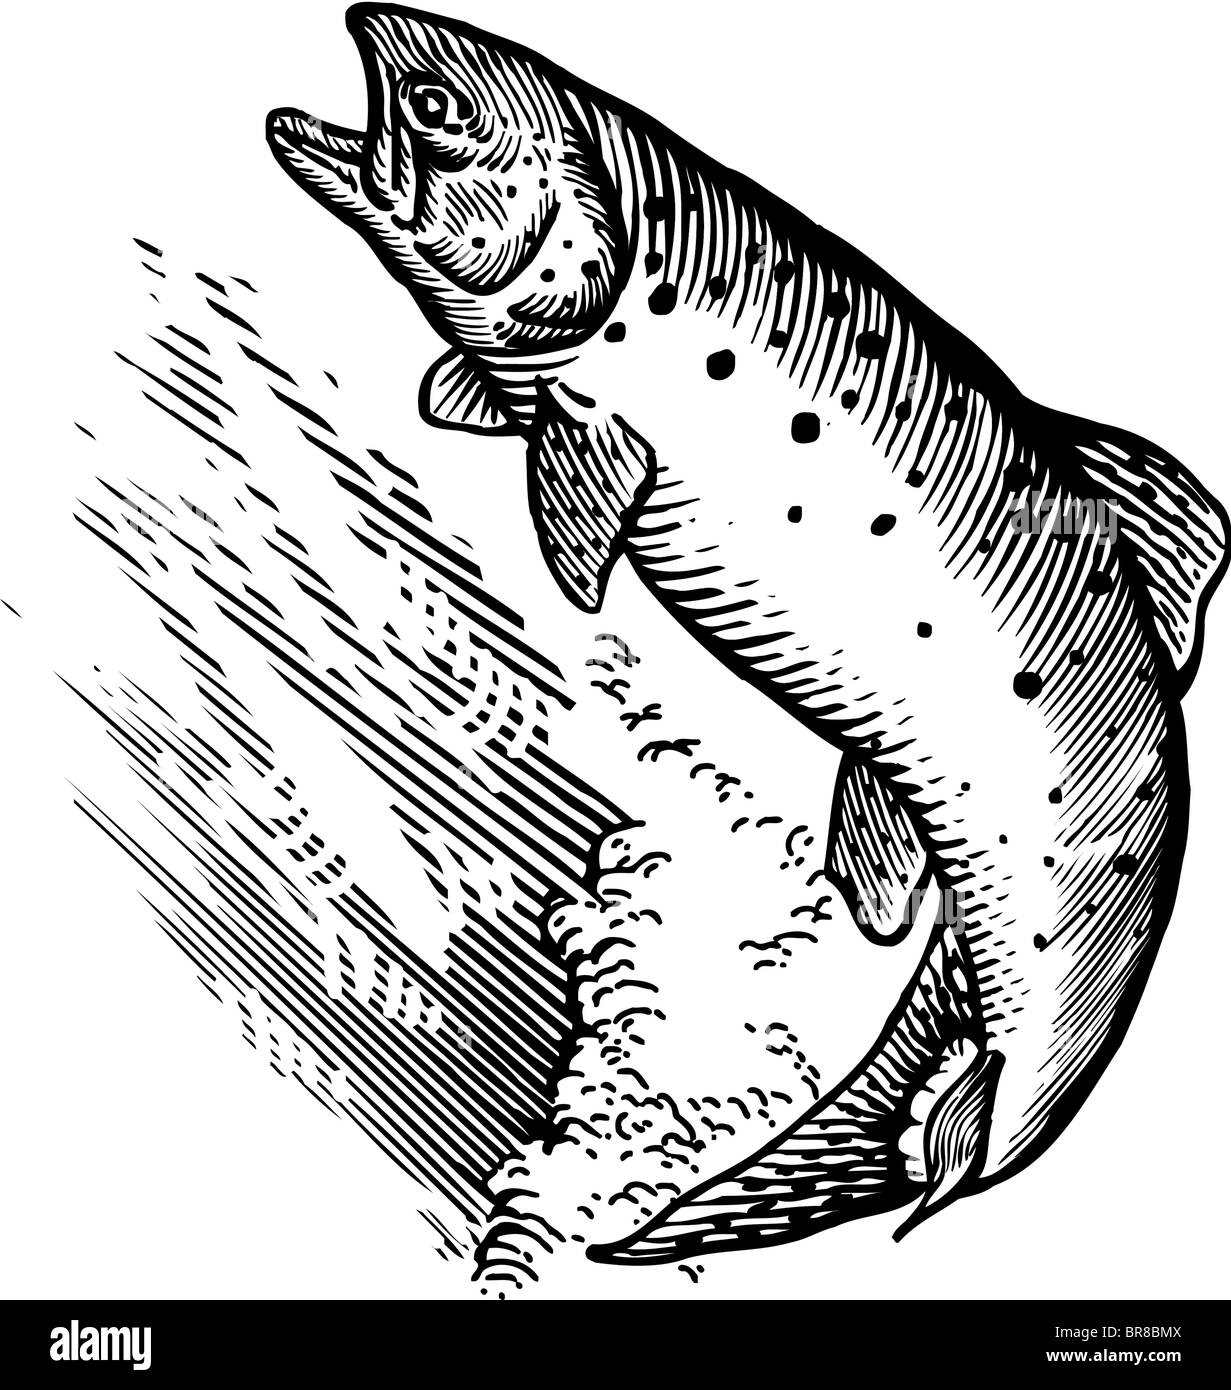 Un dessin d'un saumon bondissant Banque D'Images